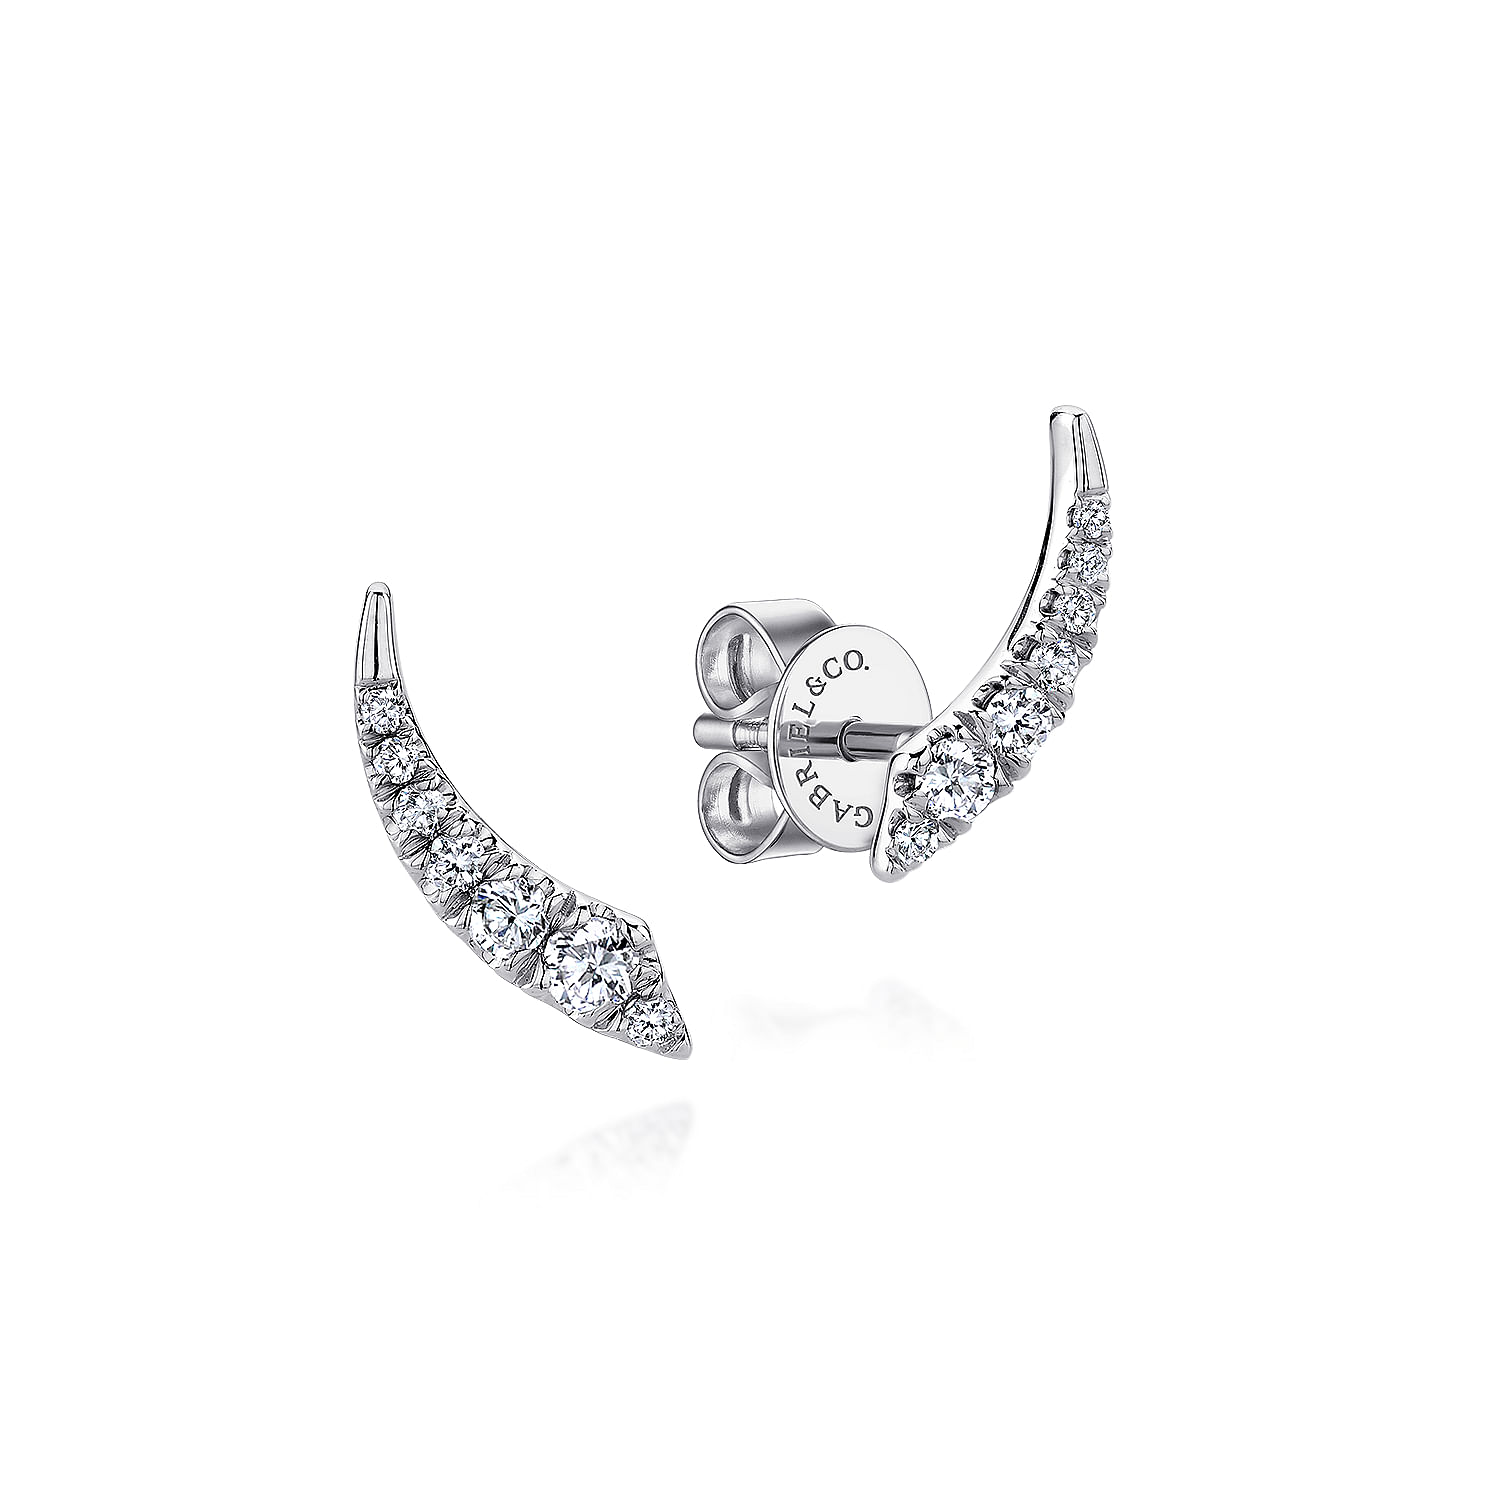 14K White Gold Curved Diamond Bar Stud Earrings